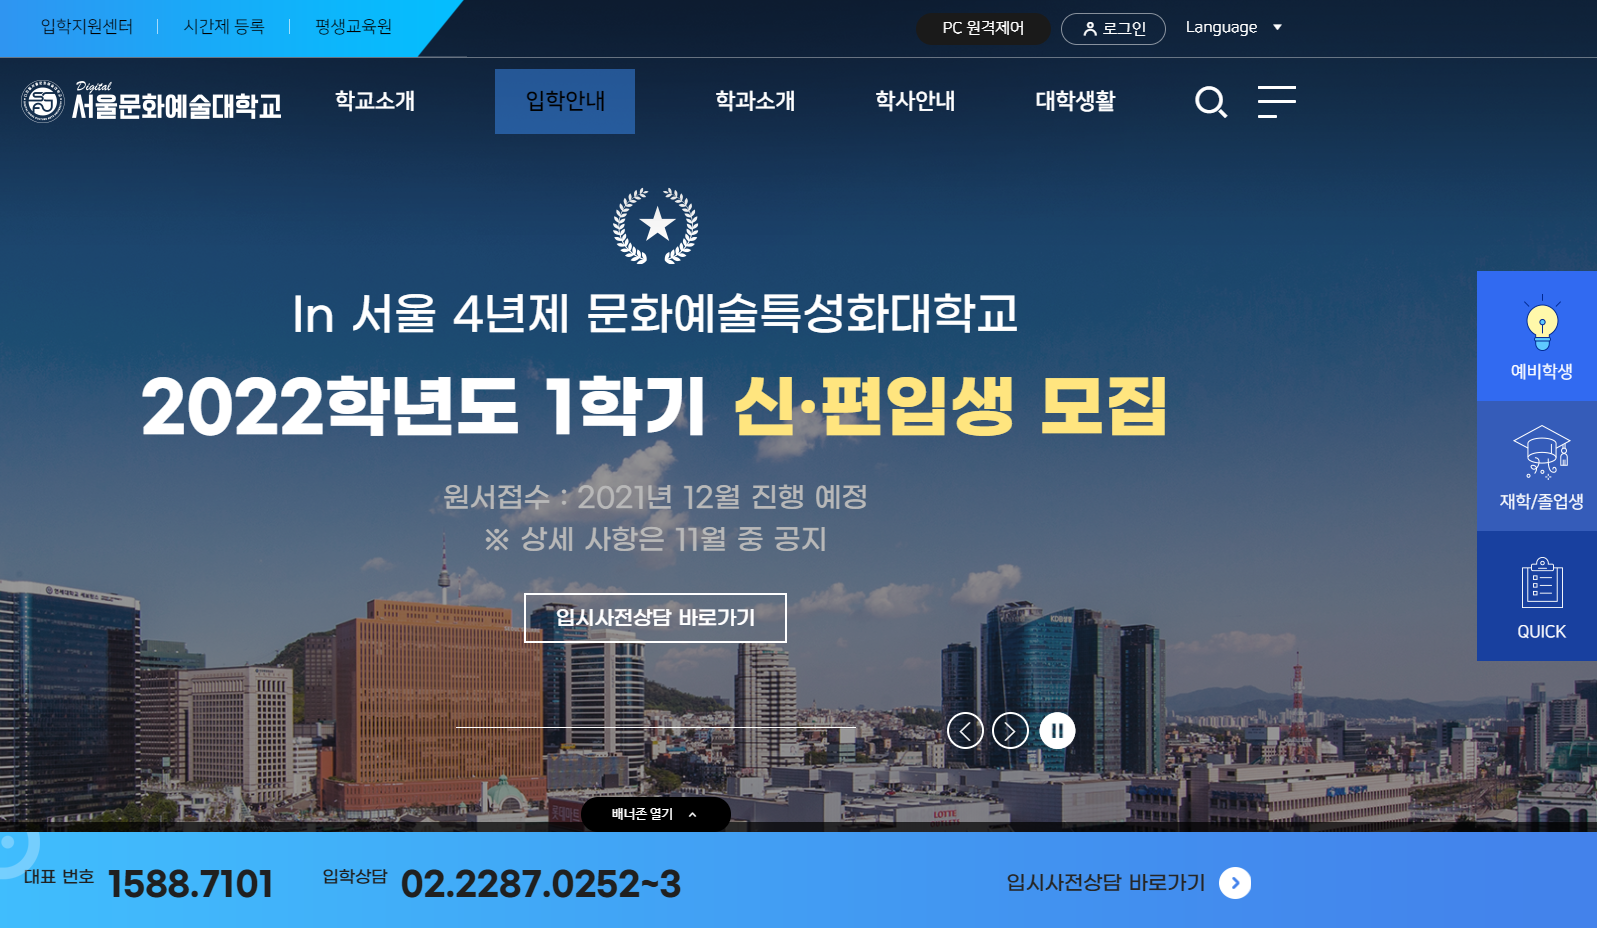 서울문화예술대학교 홈페이지 스크릿샷